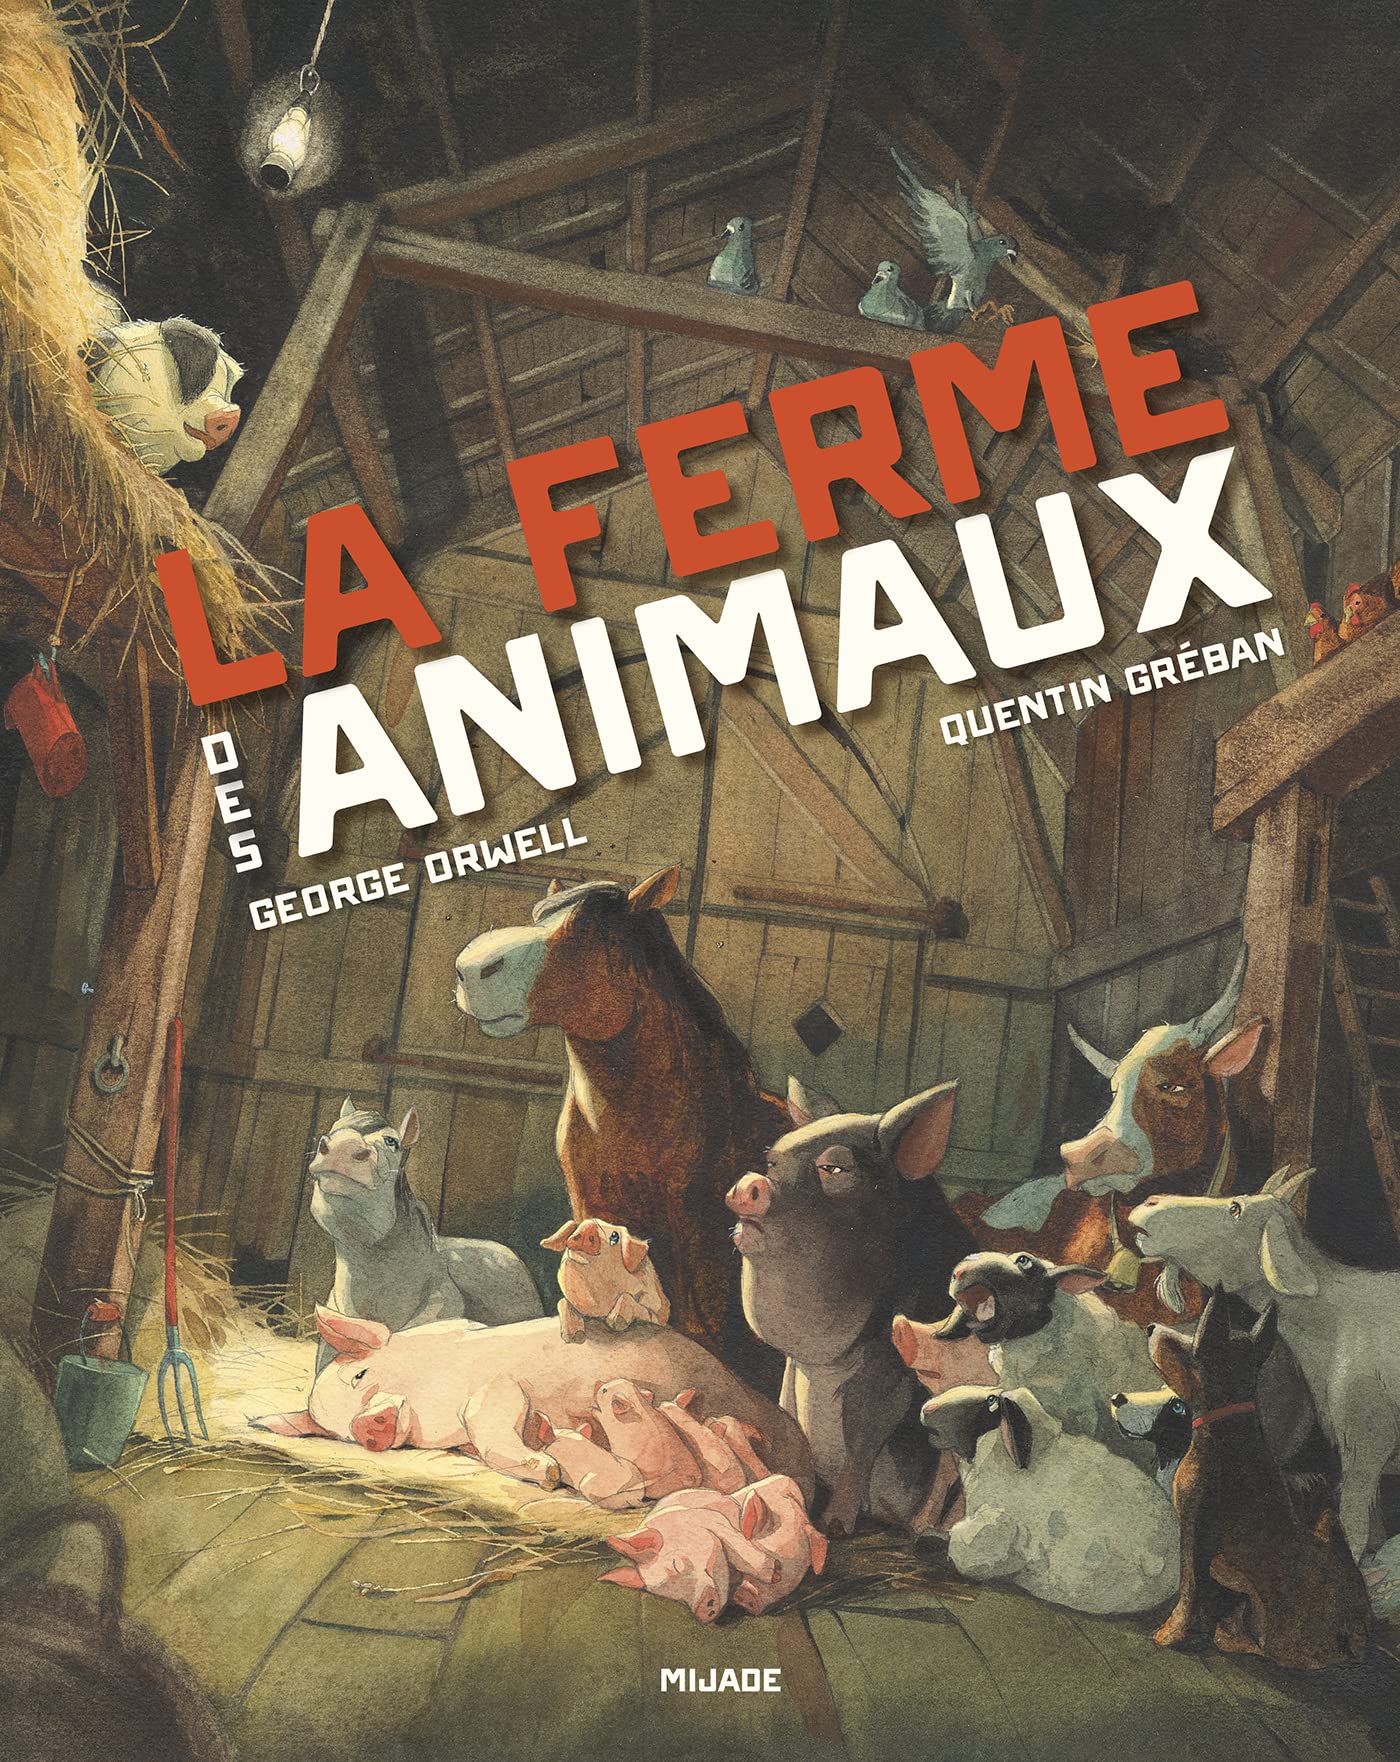 Livre de Coloriage Bébé Animaux: Pour Enfants dès 18 mois (French Edition)